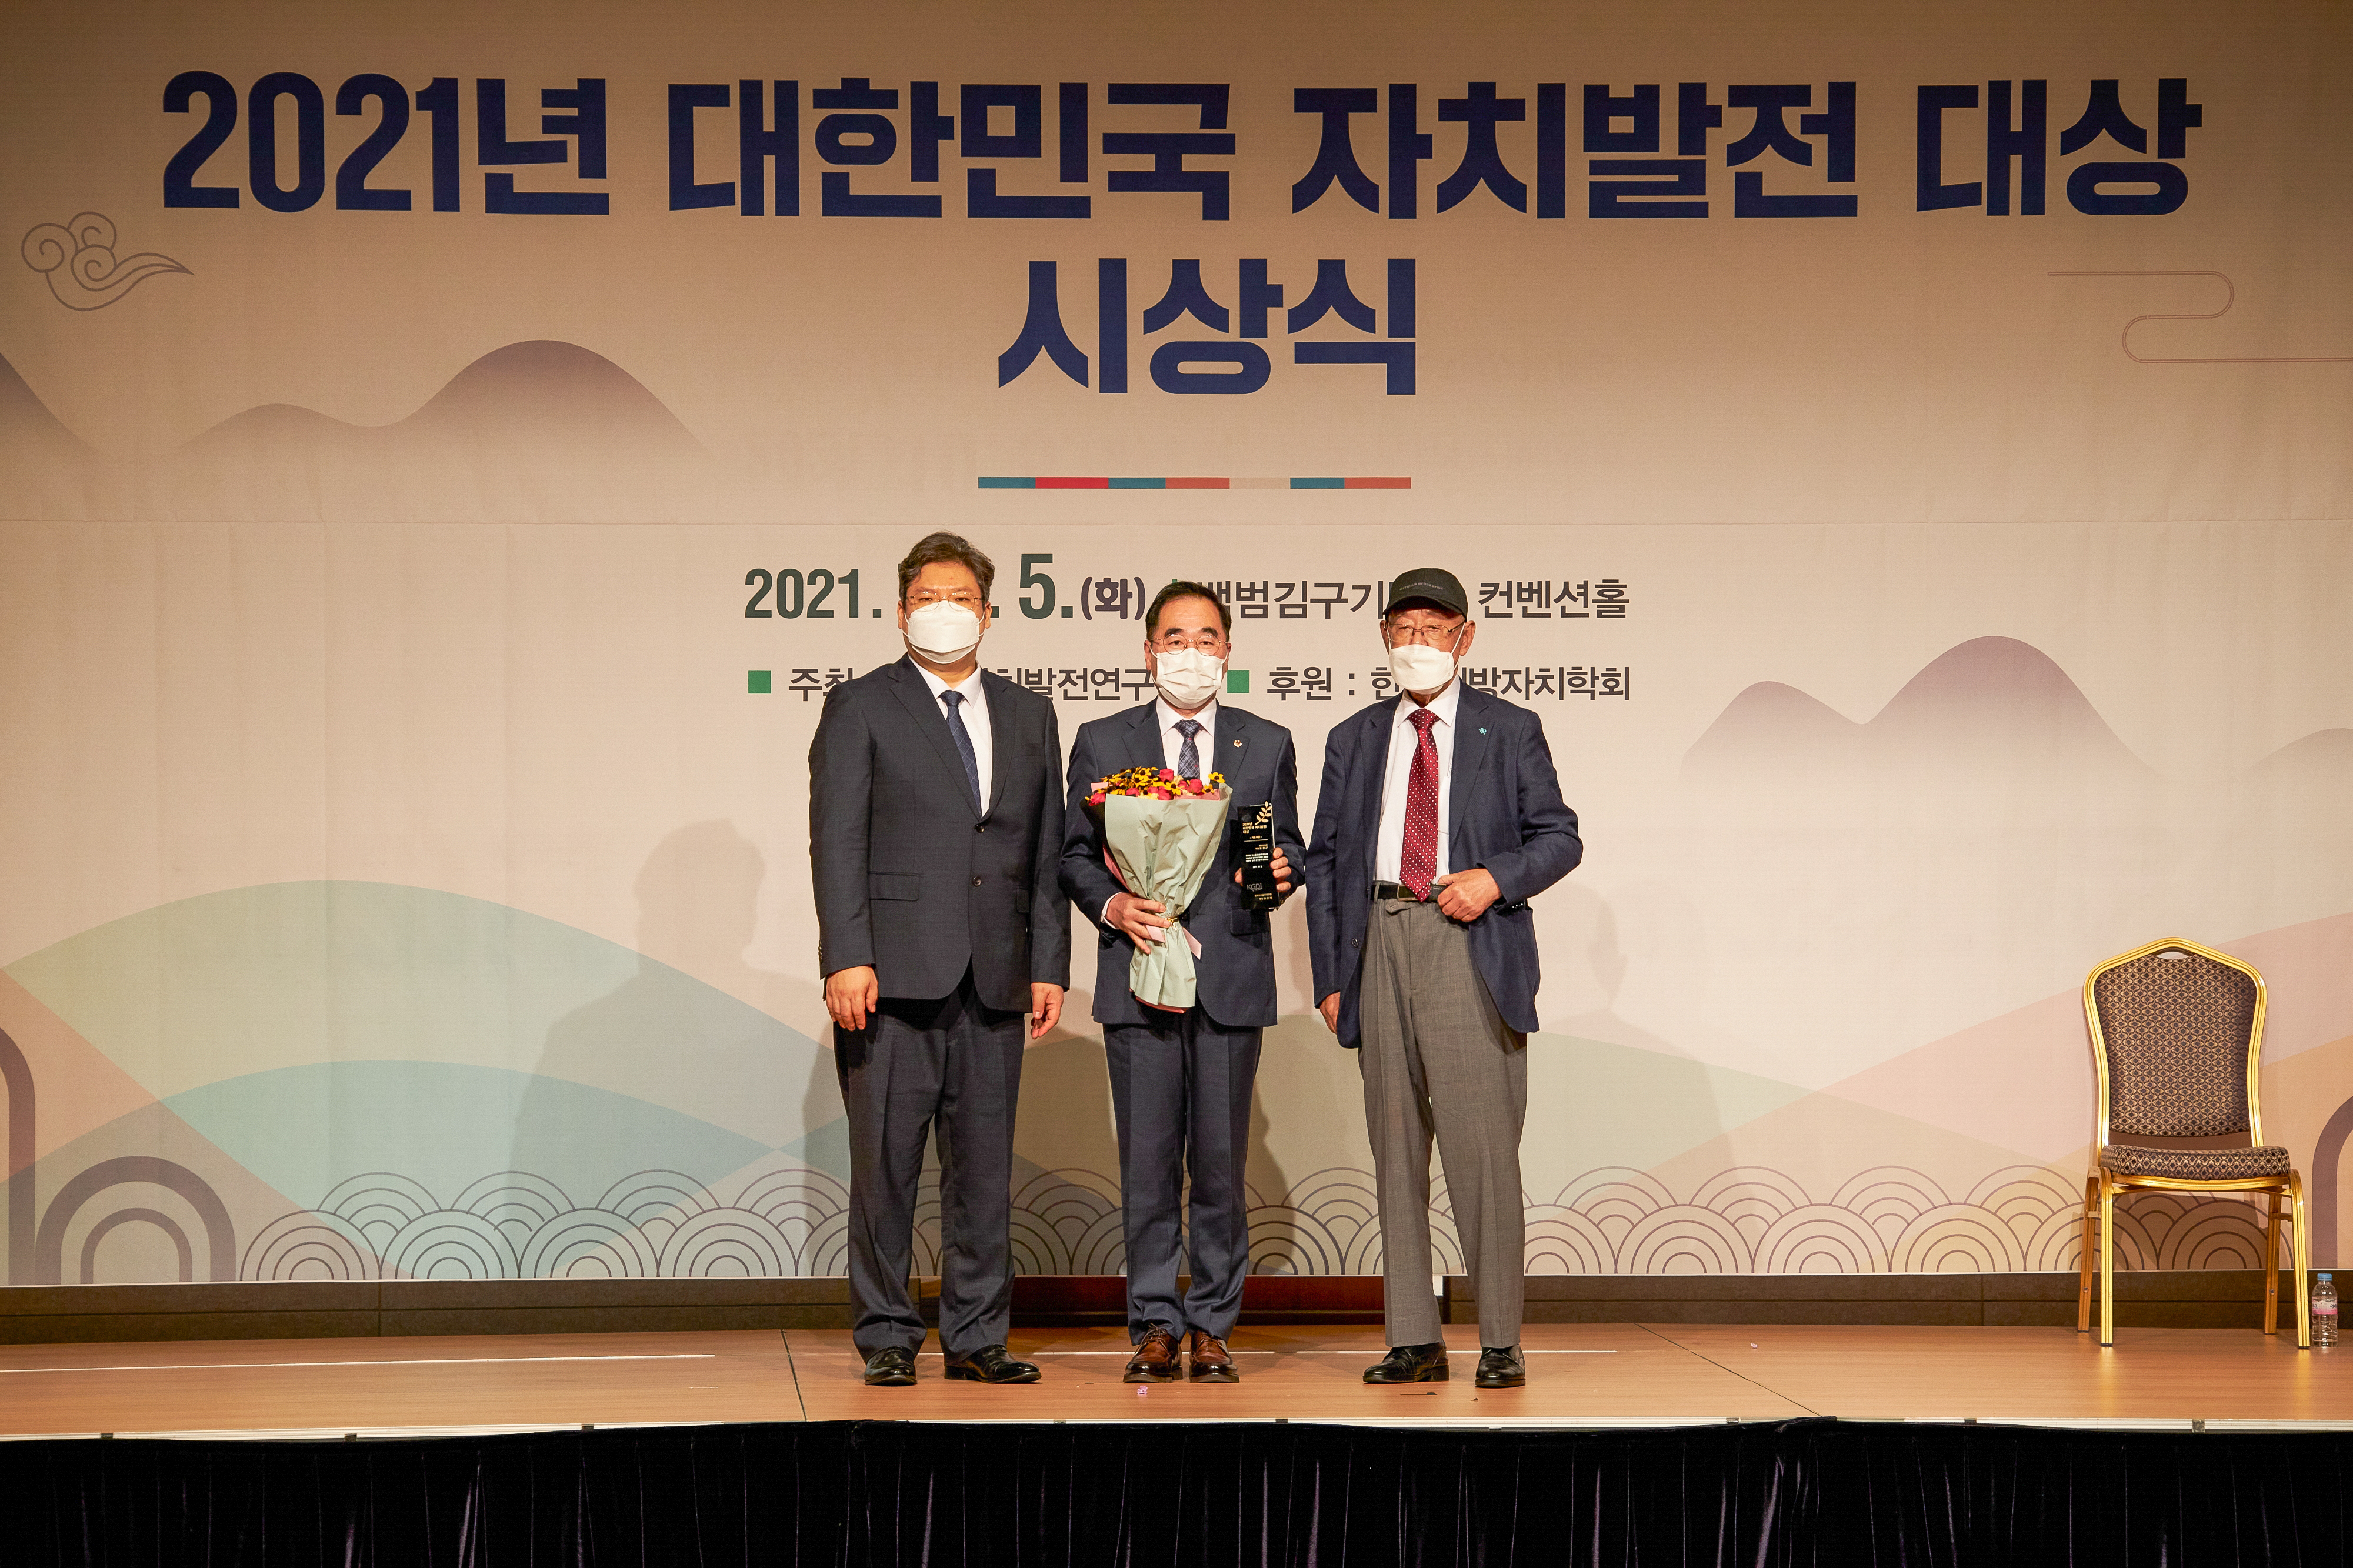 성남시의회 윤창근 의장, 2021 대한민국 자치발전 대상 기초부문 수상 - 1